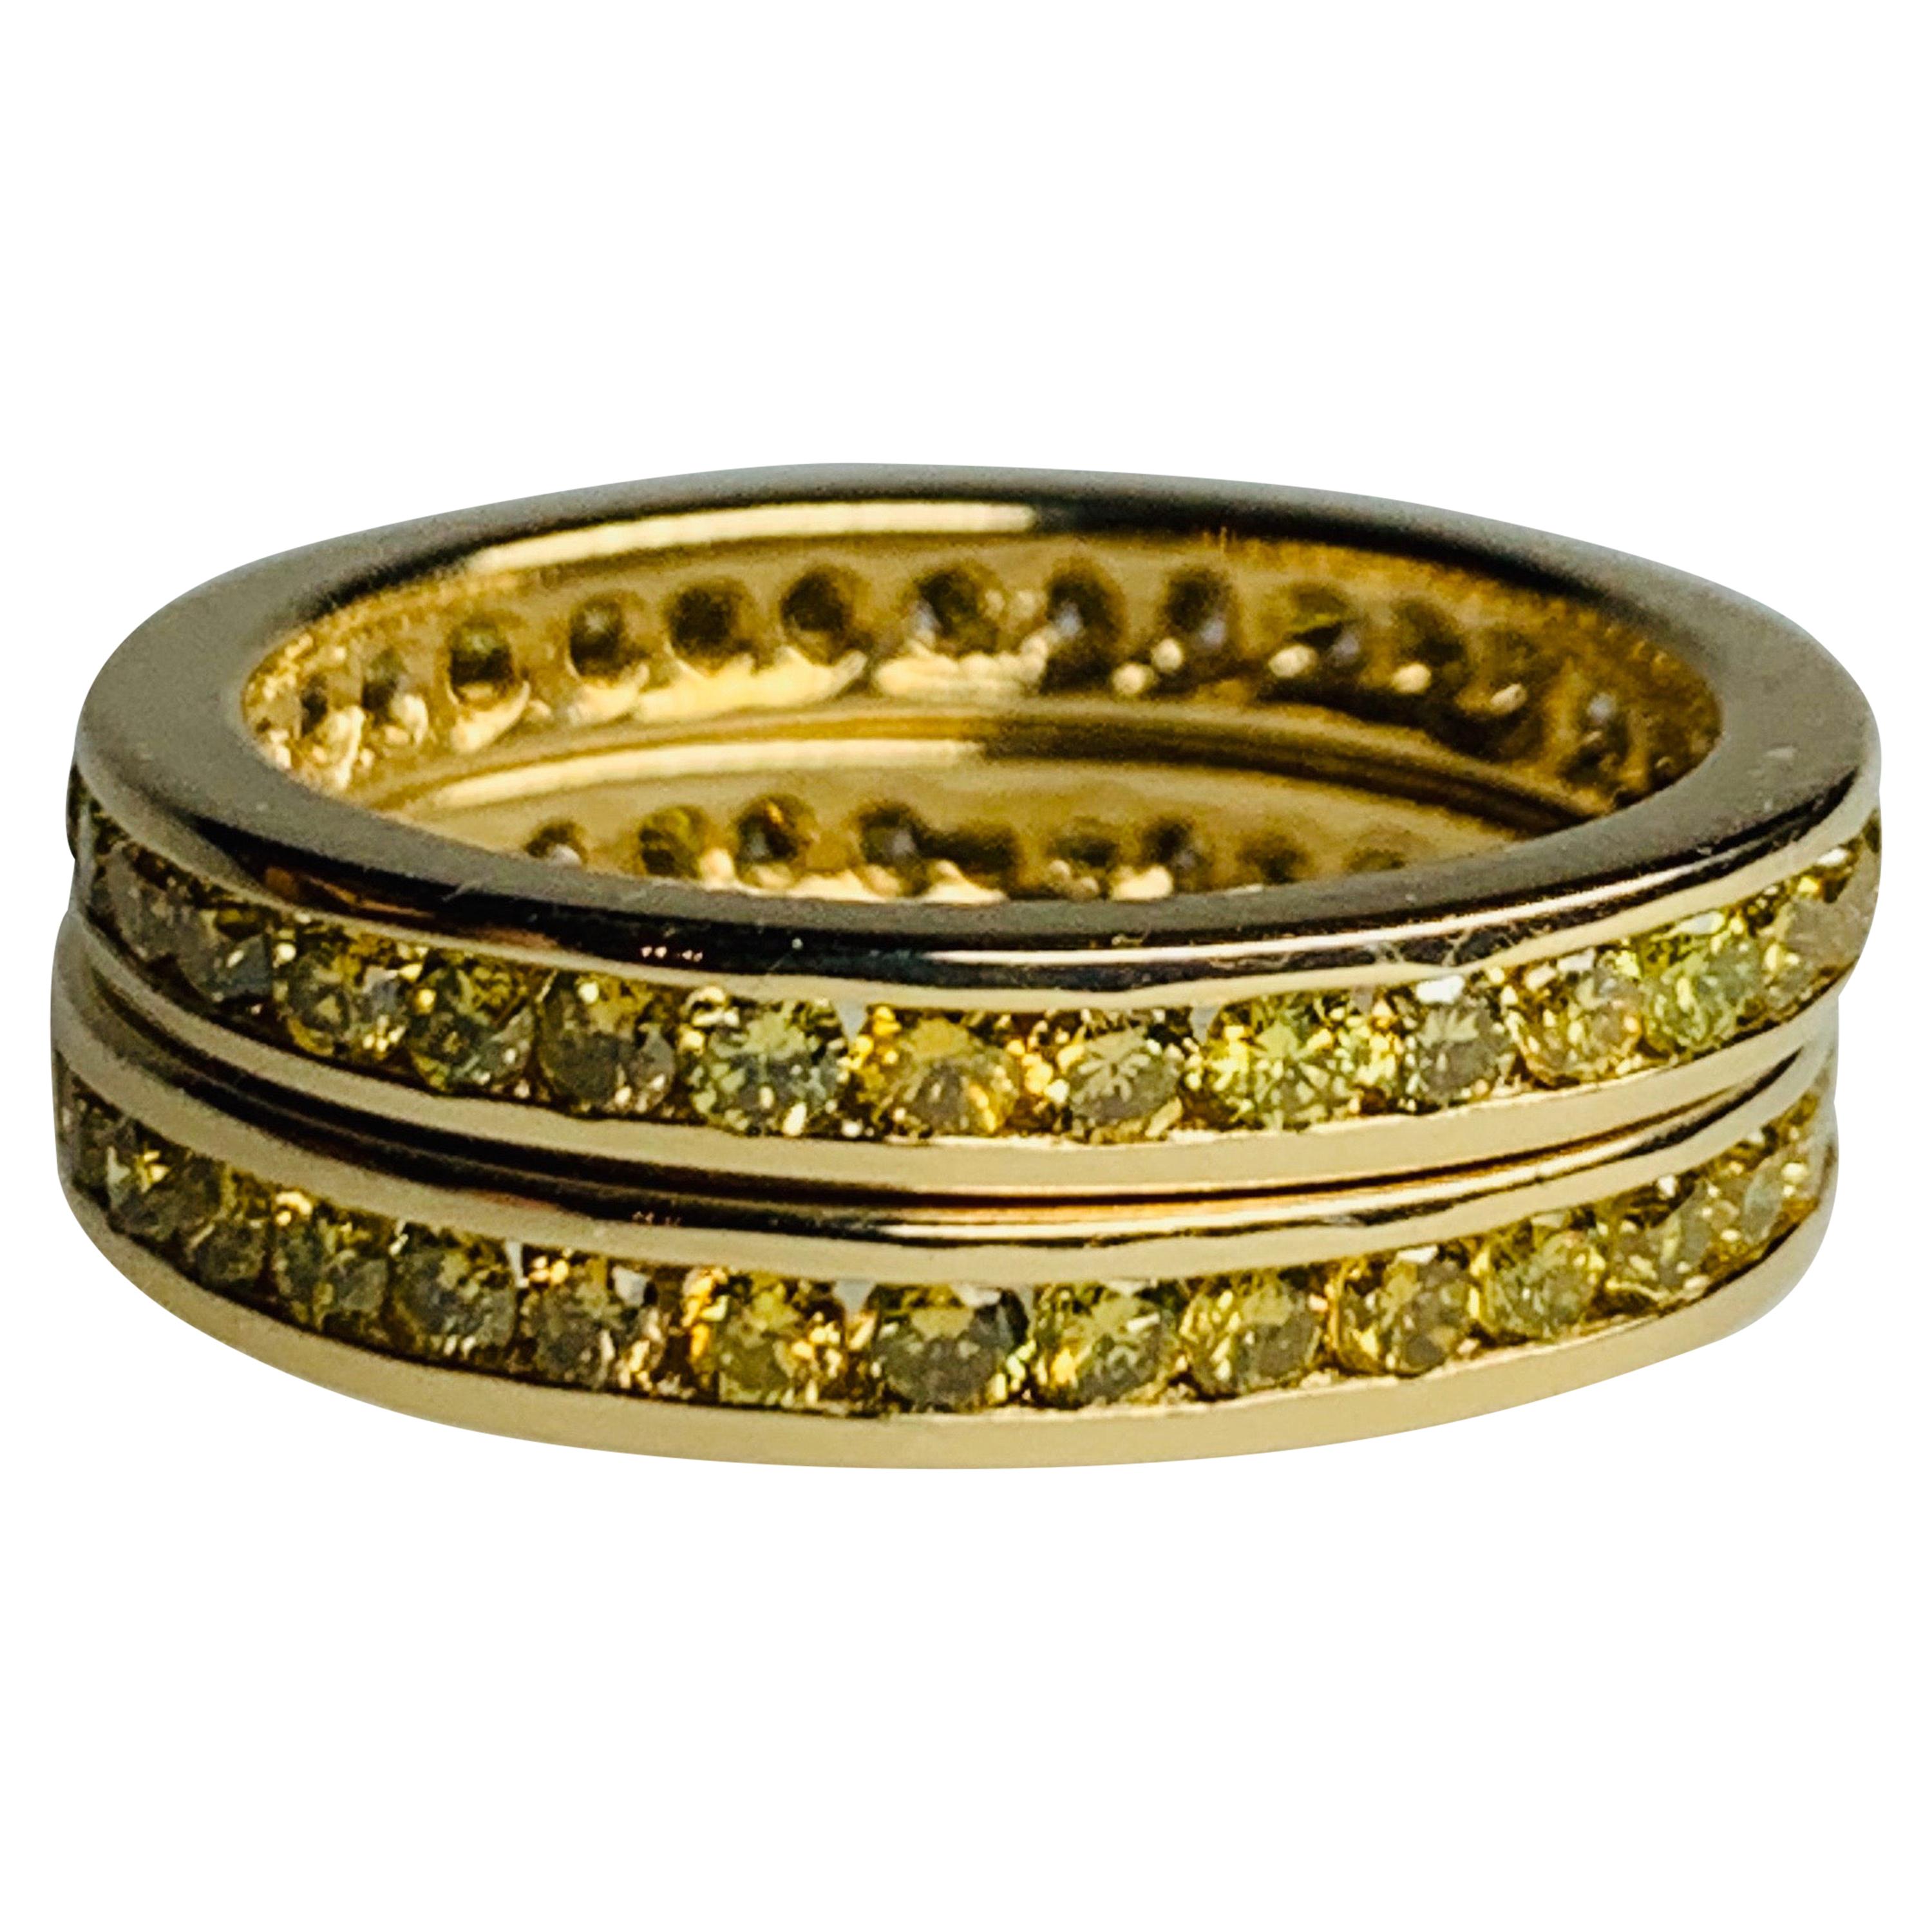 Modern Gold Band Pair 3.40 Carat Natural Intense Yellow Diamond Engagement Ring